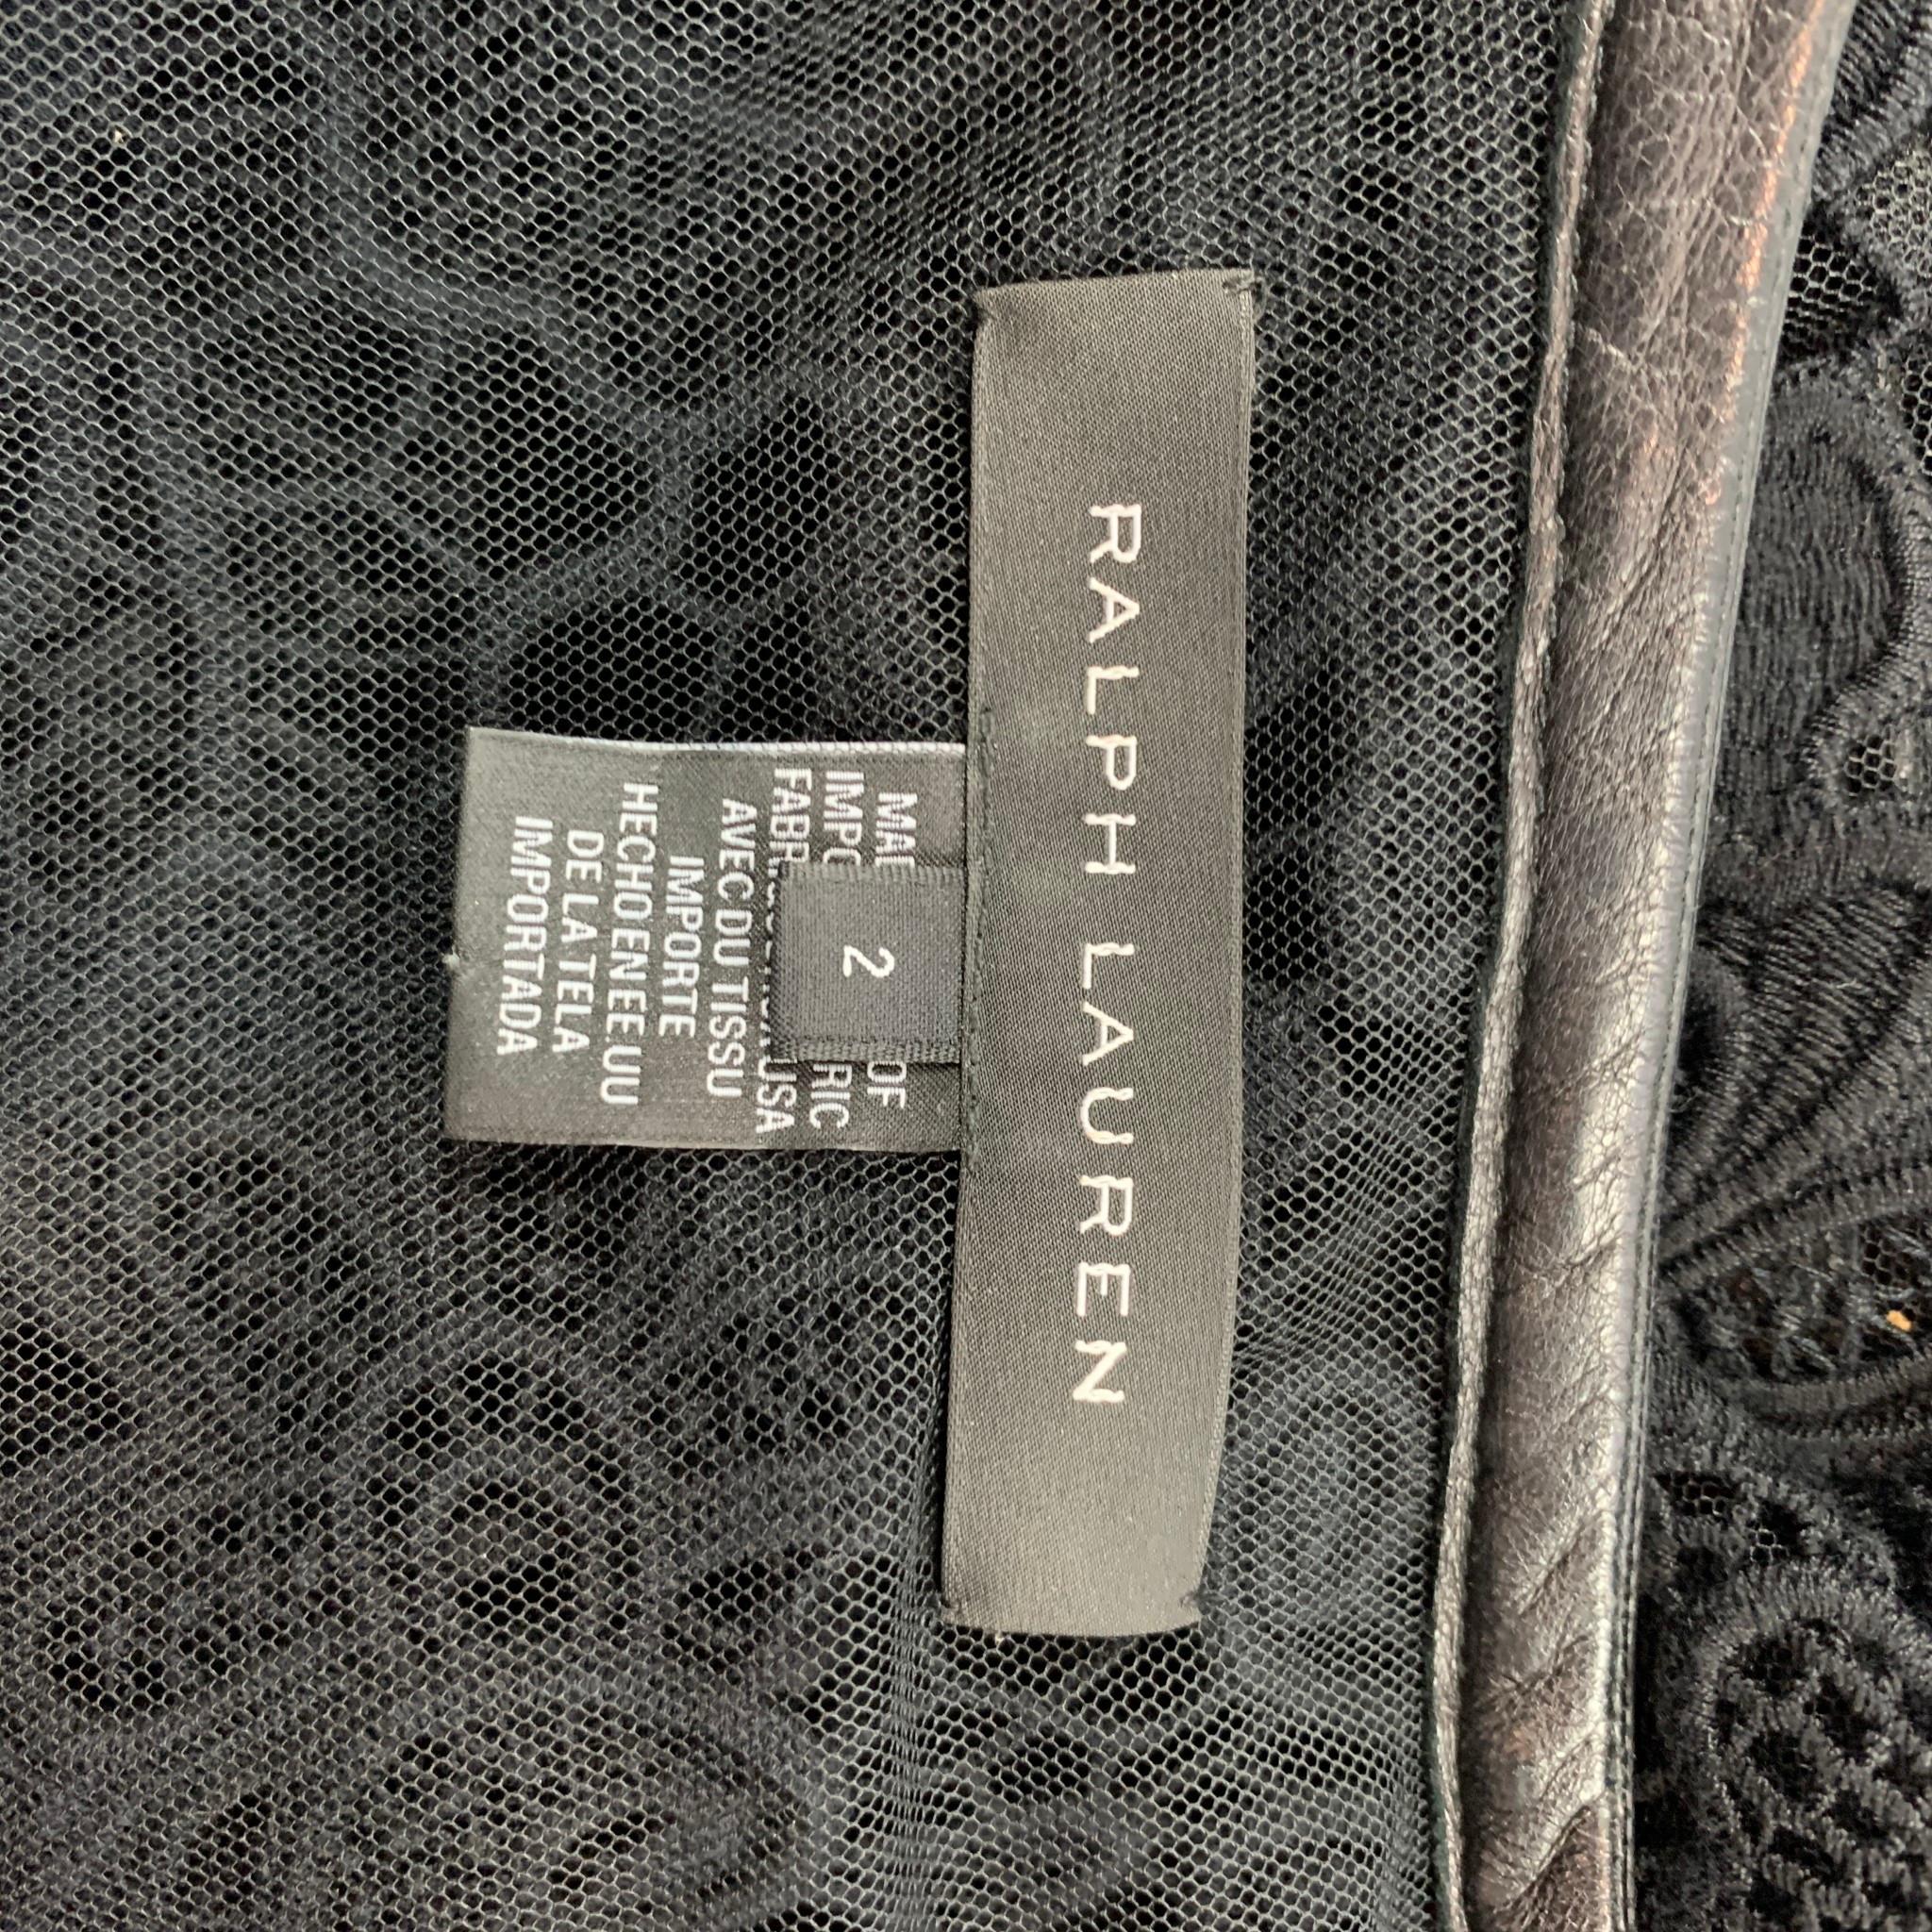 RALPH LAUREN Black Label Size 2 Black Lace Textured Cotton Leather Trim Cardigan 2